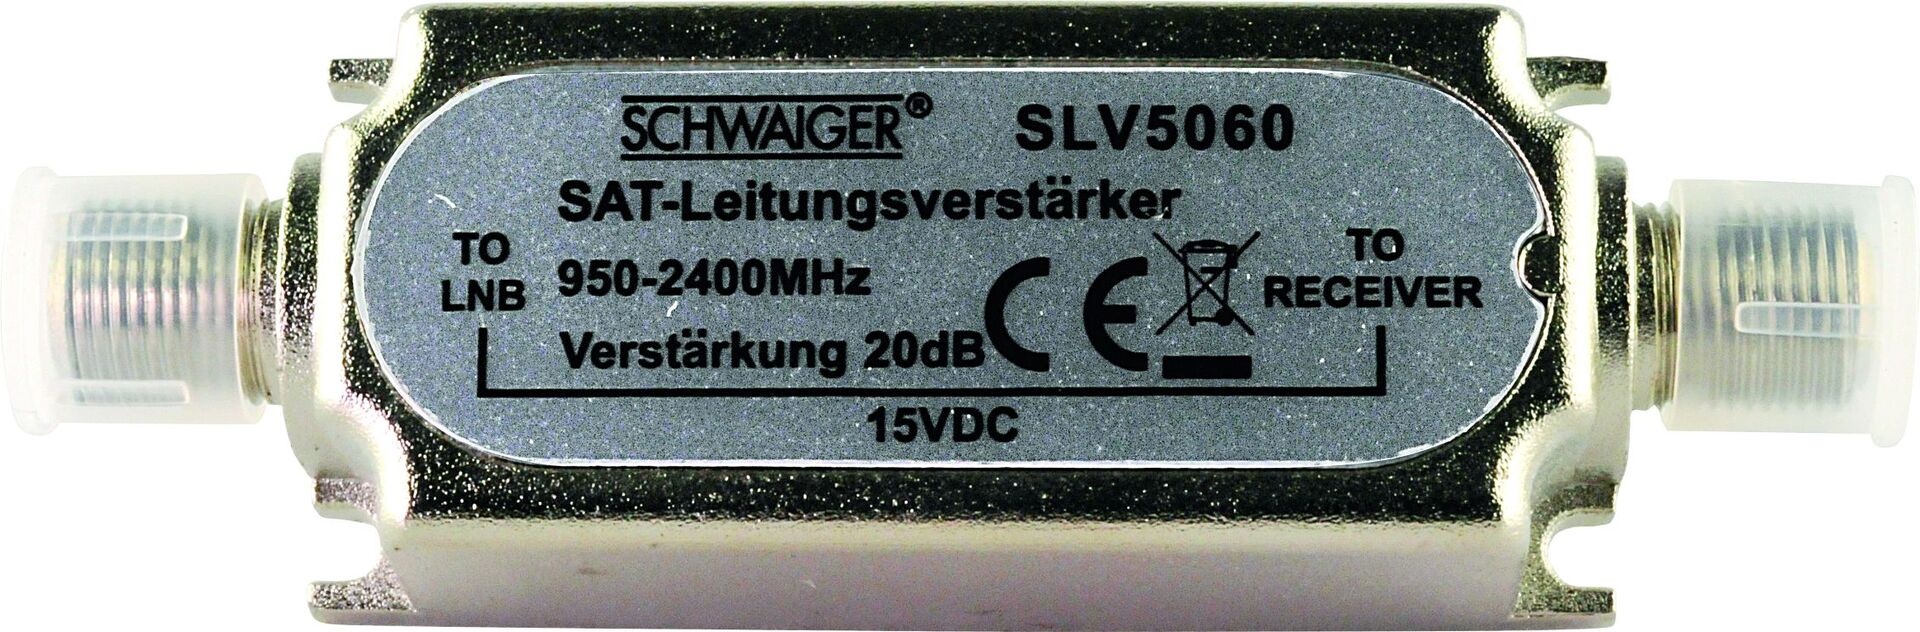 Schwaiger GmbH Schwaiger SAT-Leitungsverstärker